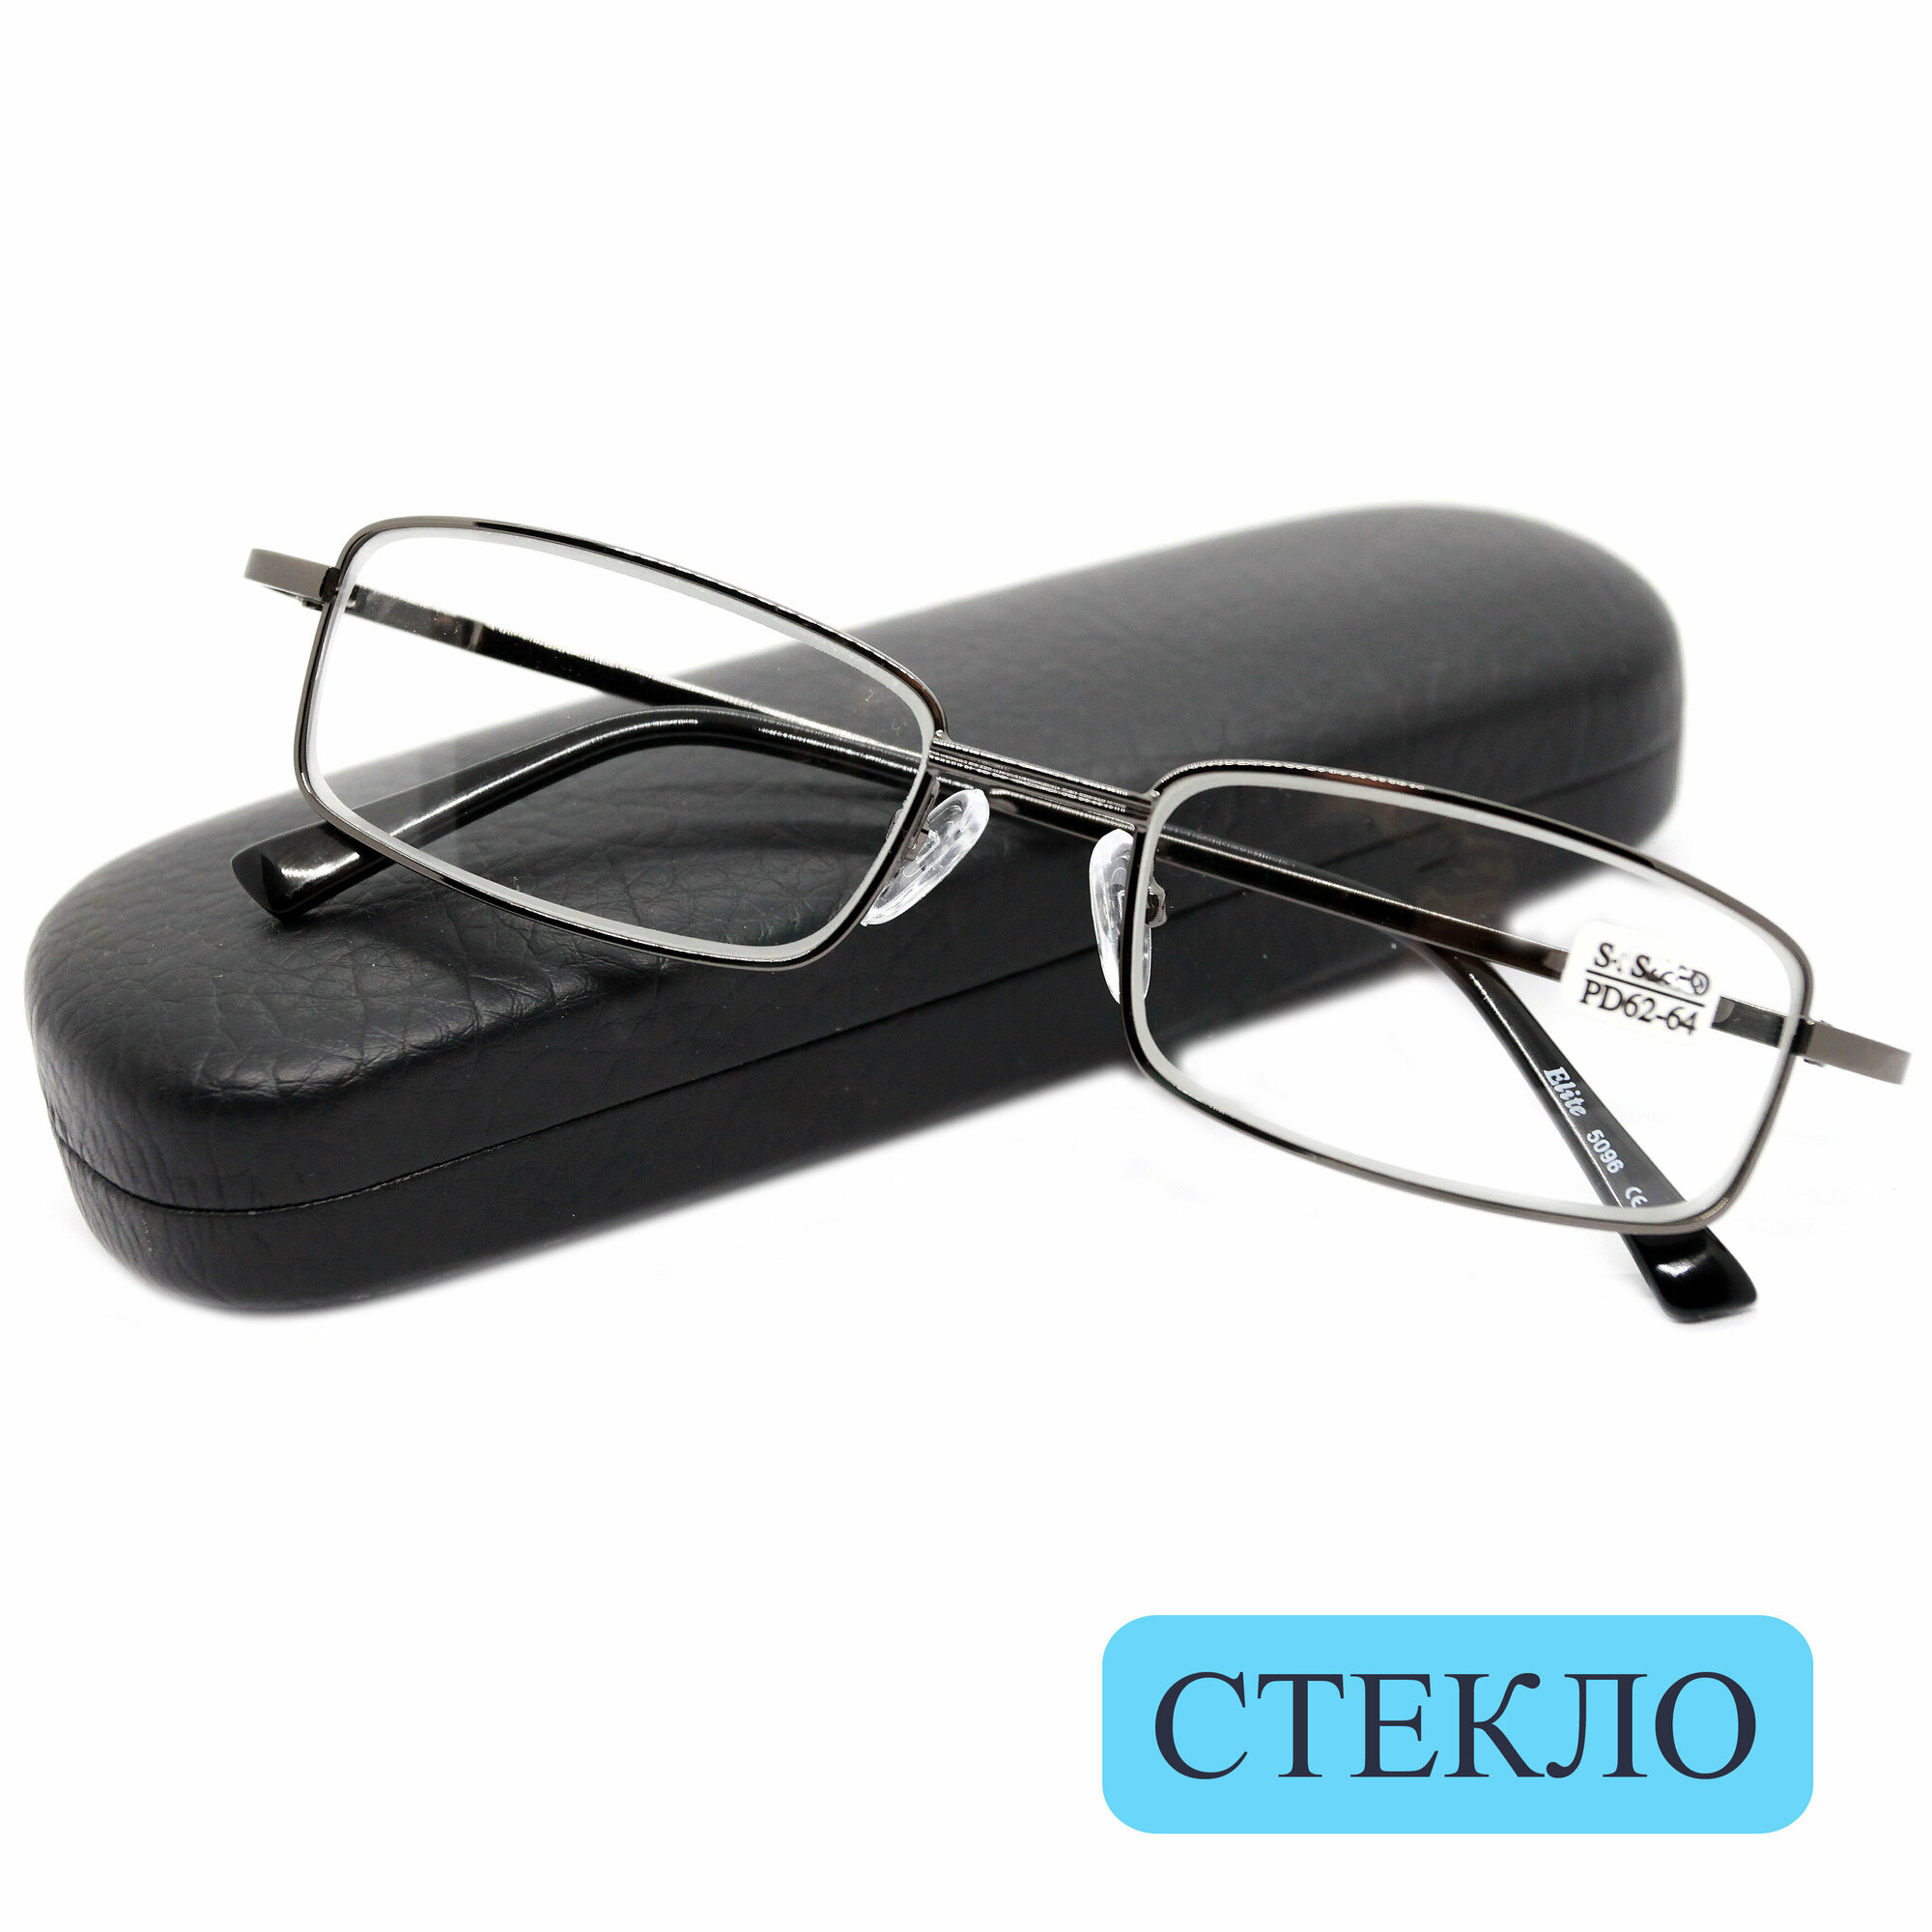 Качественные очки стекло из медицинской стали (+0.50) ELITE 5096, линза стекло, цвет серый, РЦ62-64, с футляром